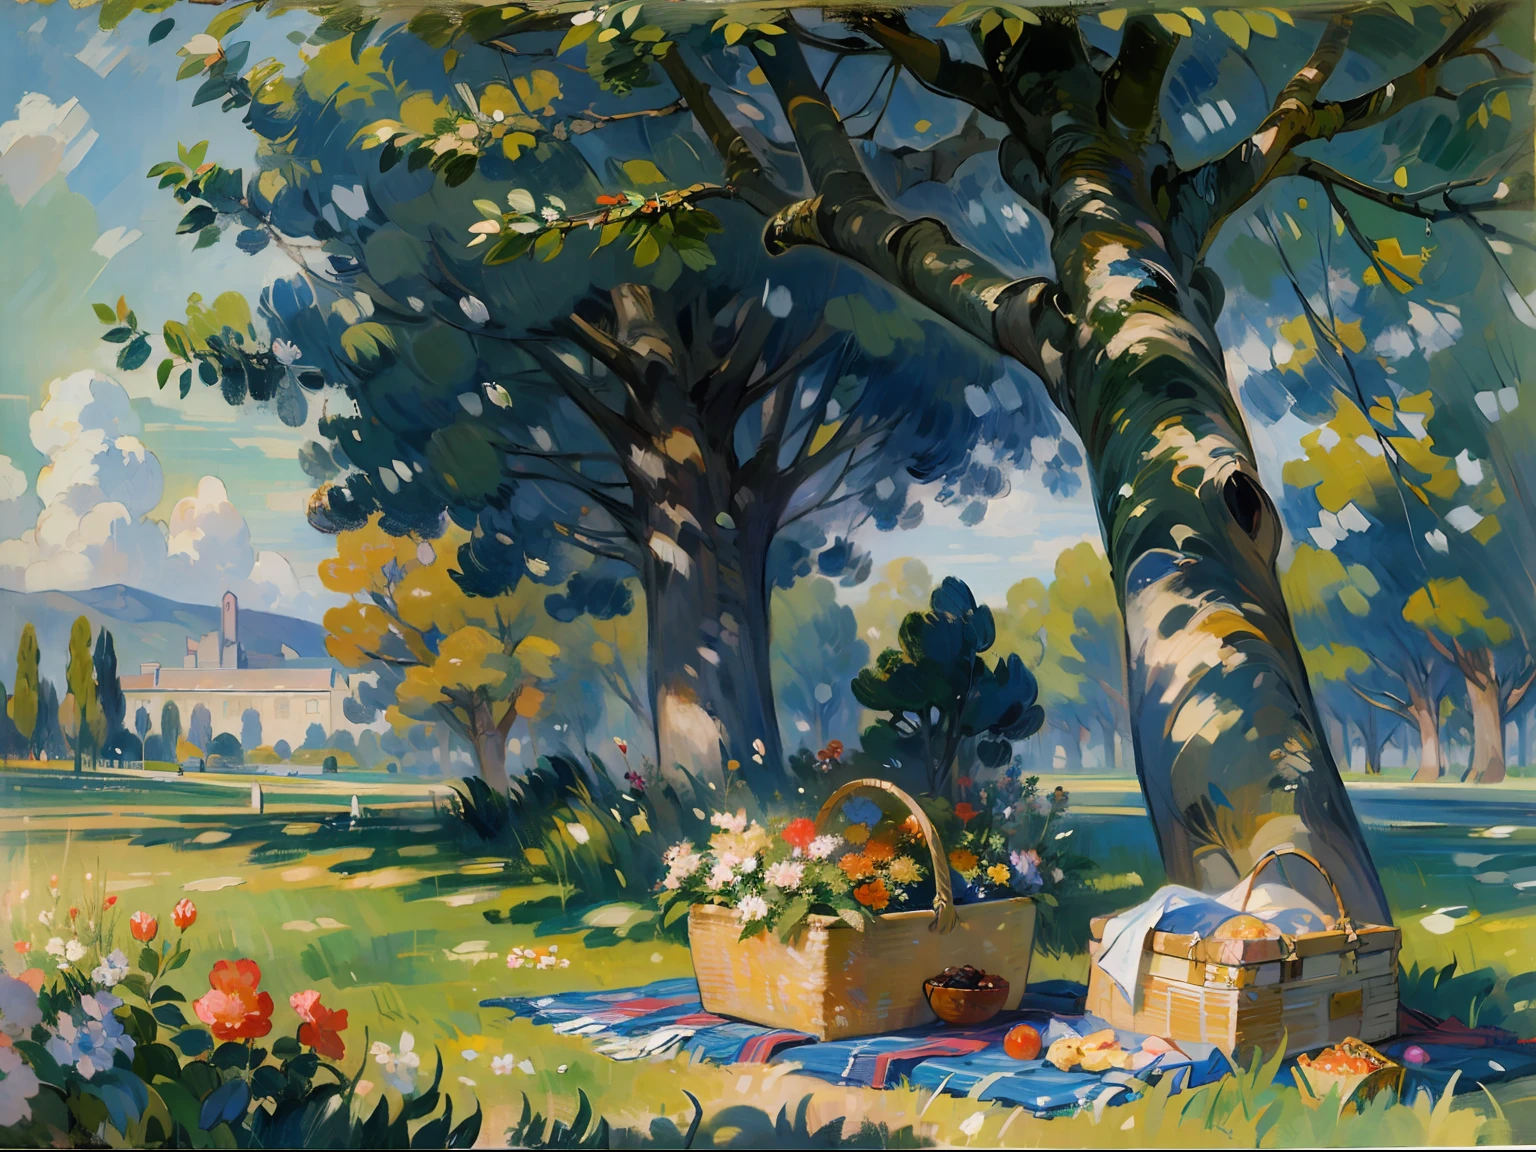 ((Un arbre)), ((Chêne)), ((ombre)), ((couverture)), ((panier pique-nique)), herbe, fleurs, domaine, palais, Colonnes, ((19ème siècle)), (Renoir), (Beaucoup), (peinture à l&#39;huile)